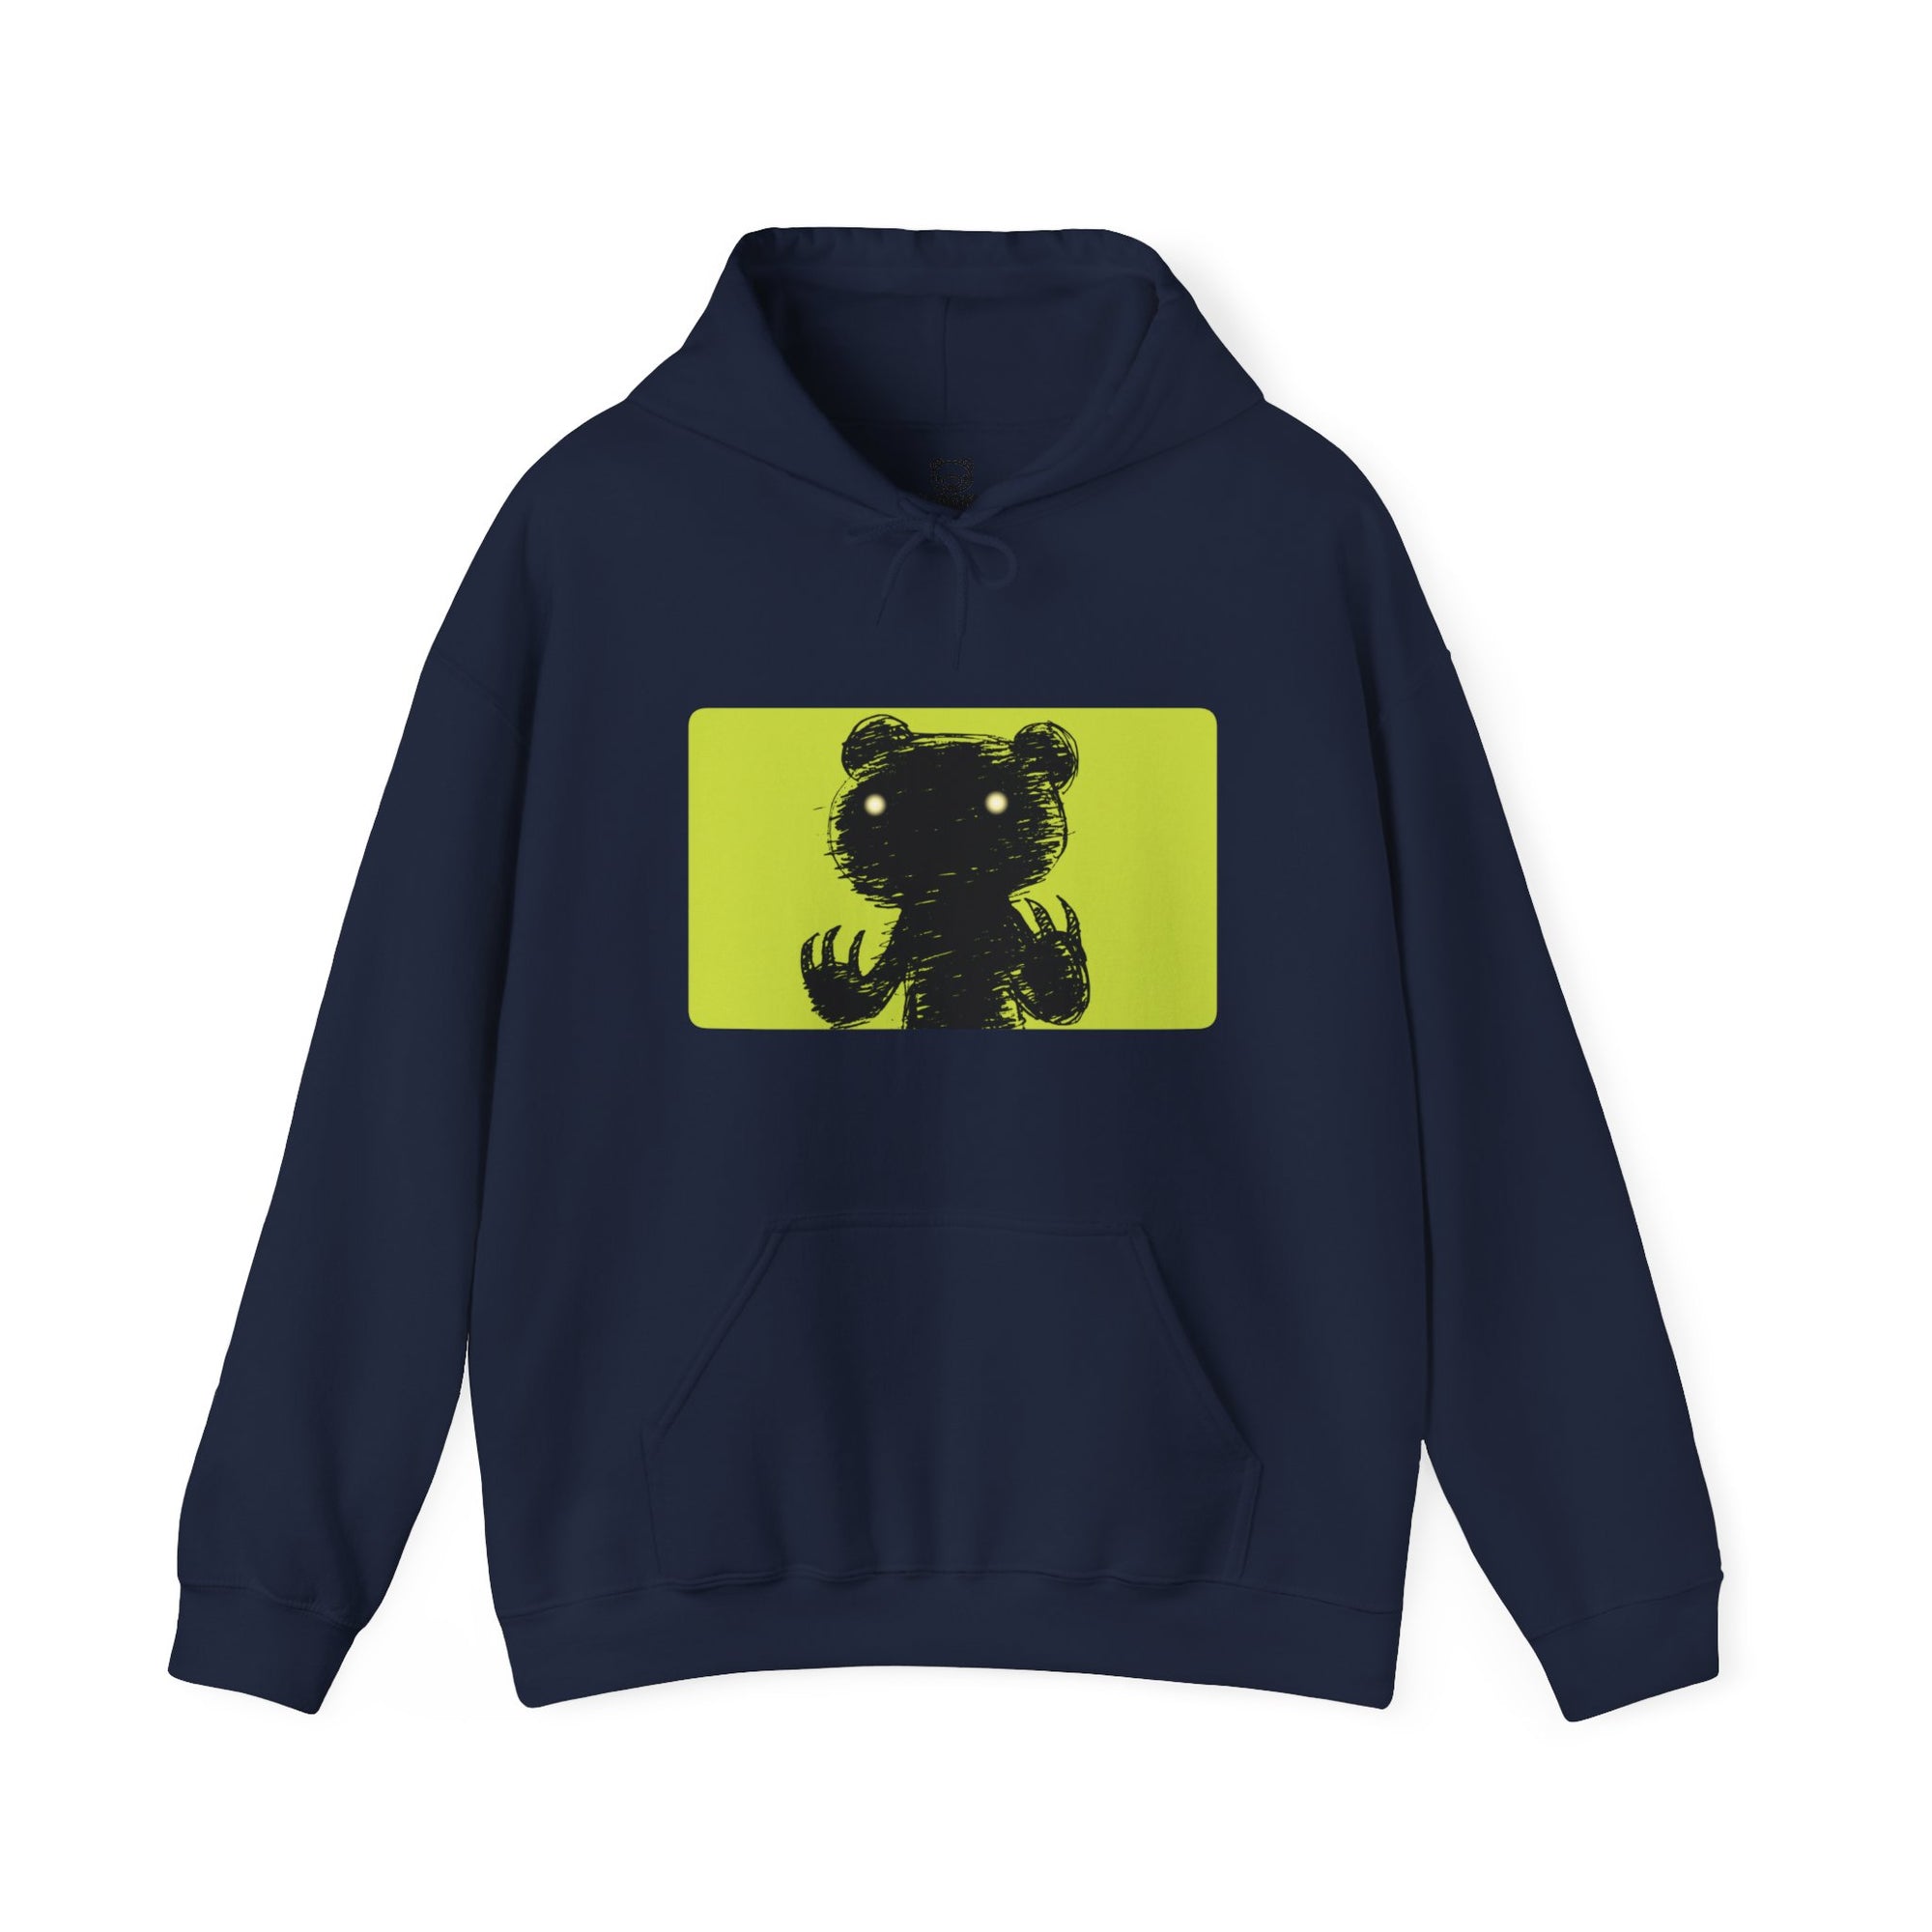 Green Block Abstraction Gloomy Bear Unisex Hooded Sweatshirt